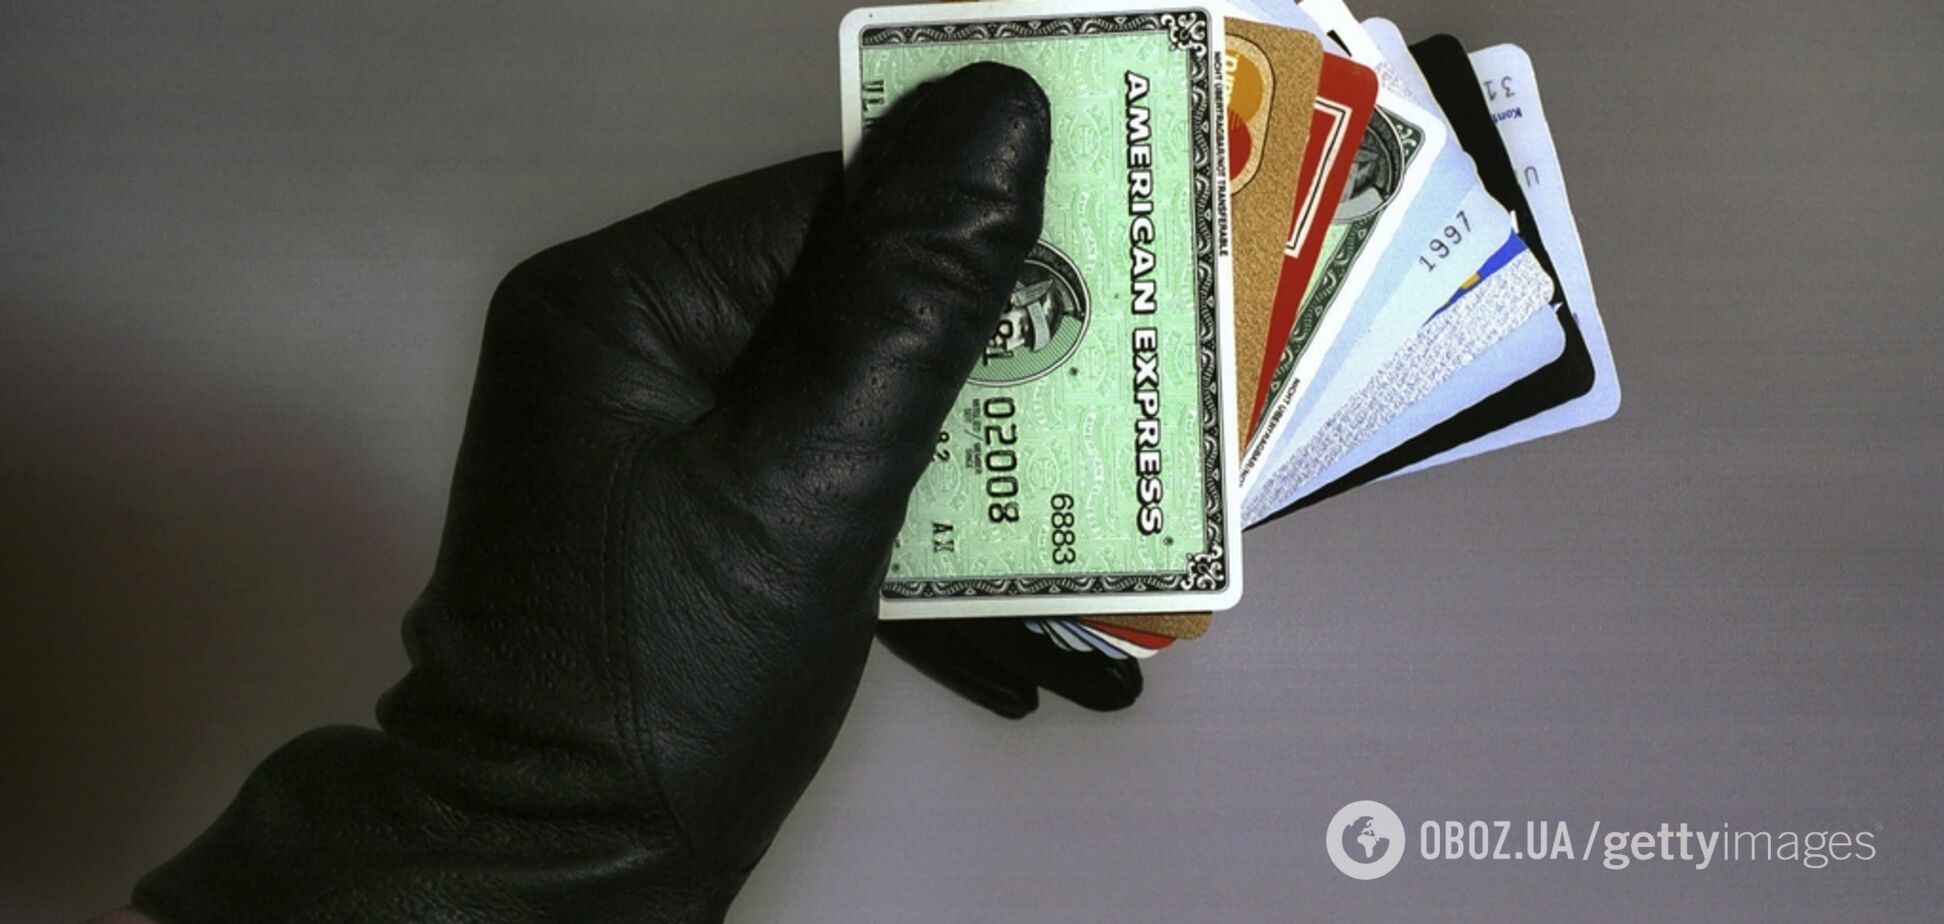 'Срубить бабло': в Украине раскрыли аферу от имени известного банка